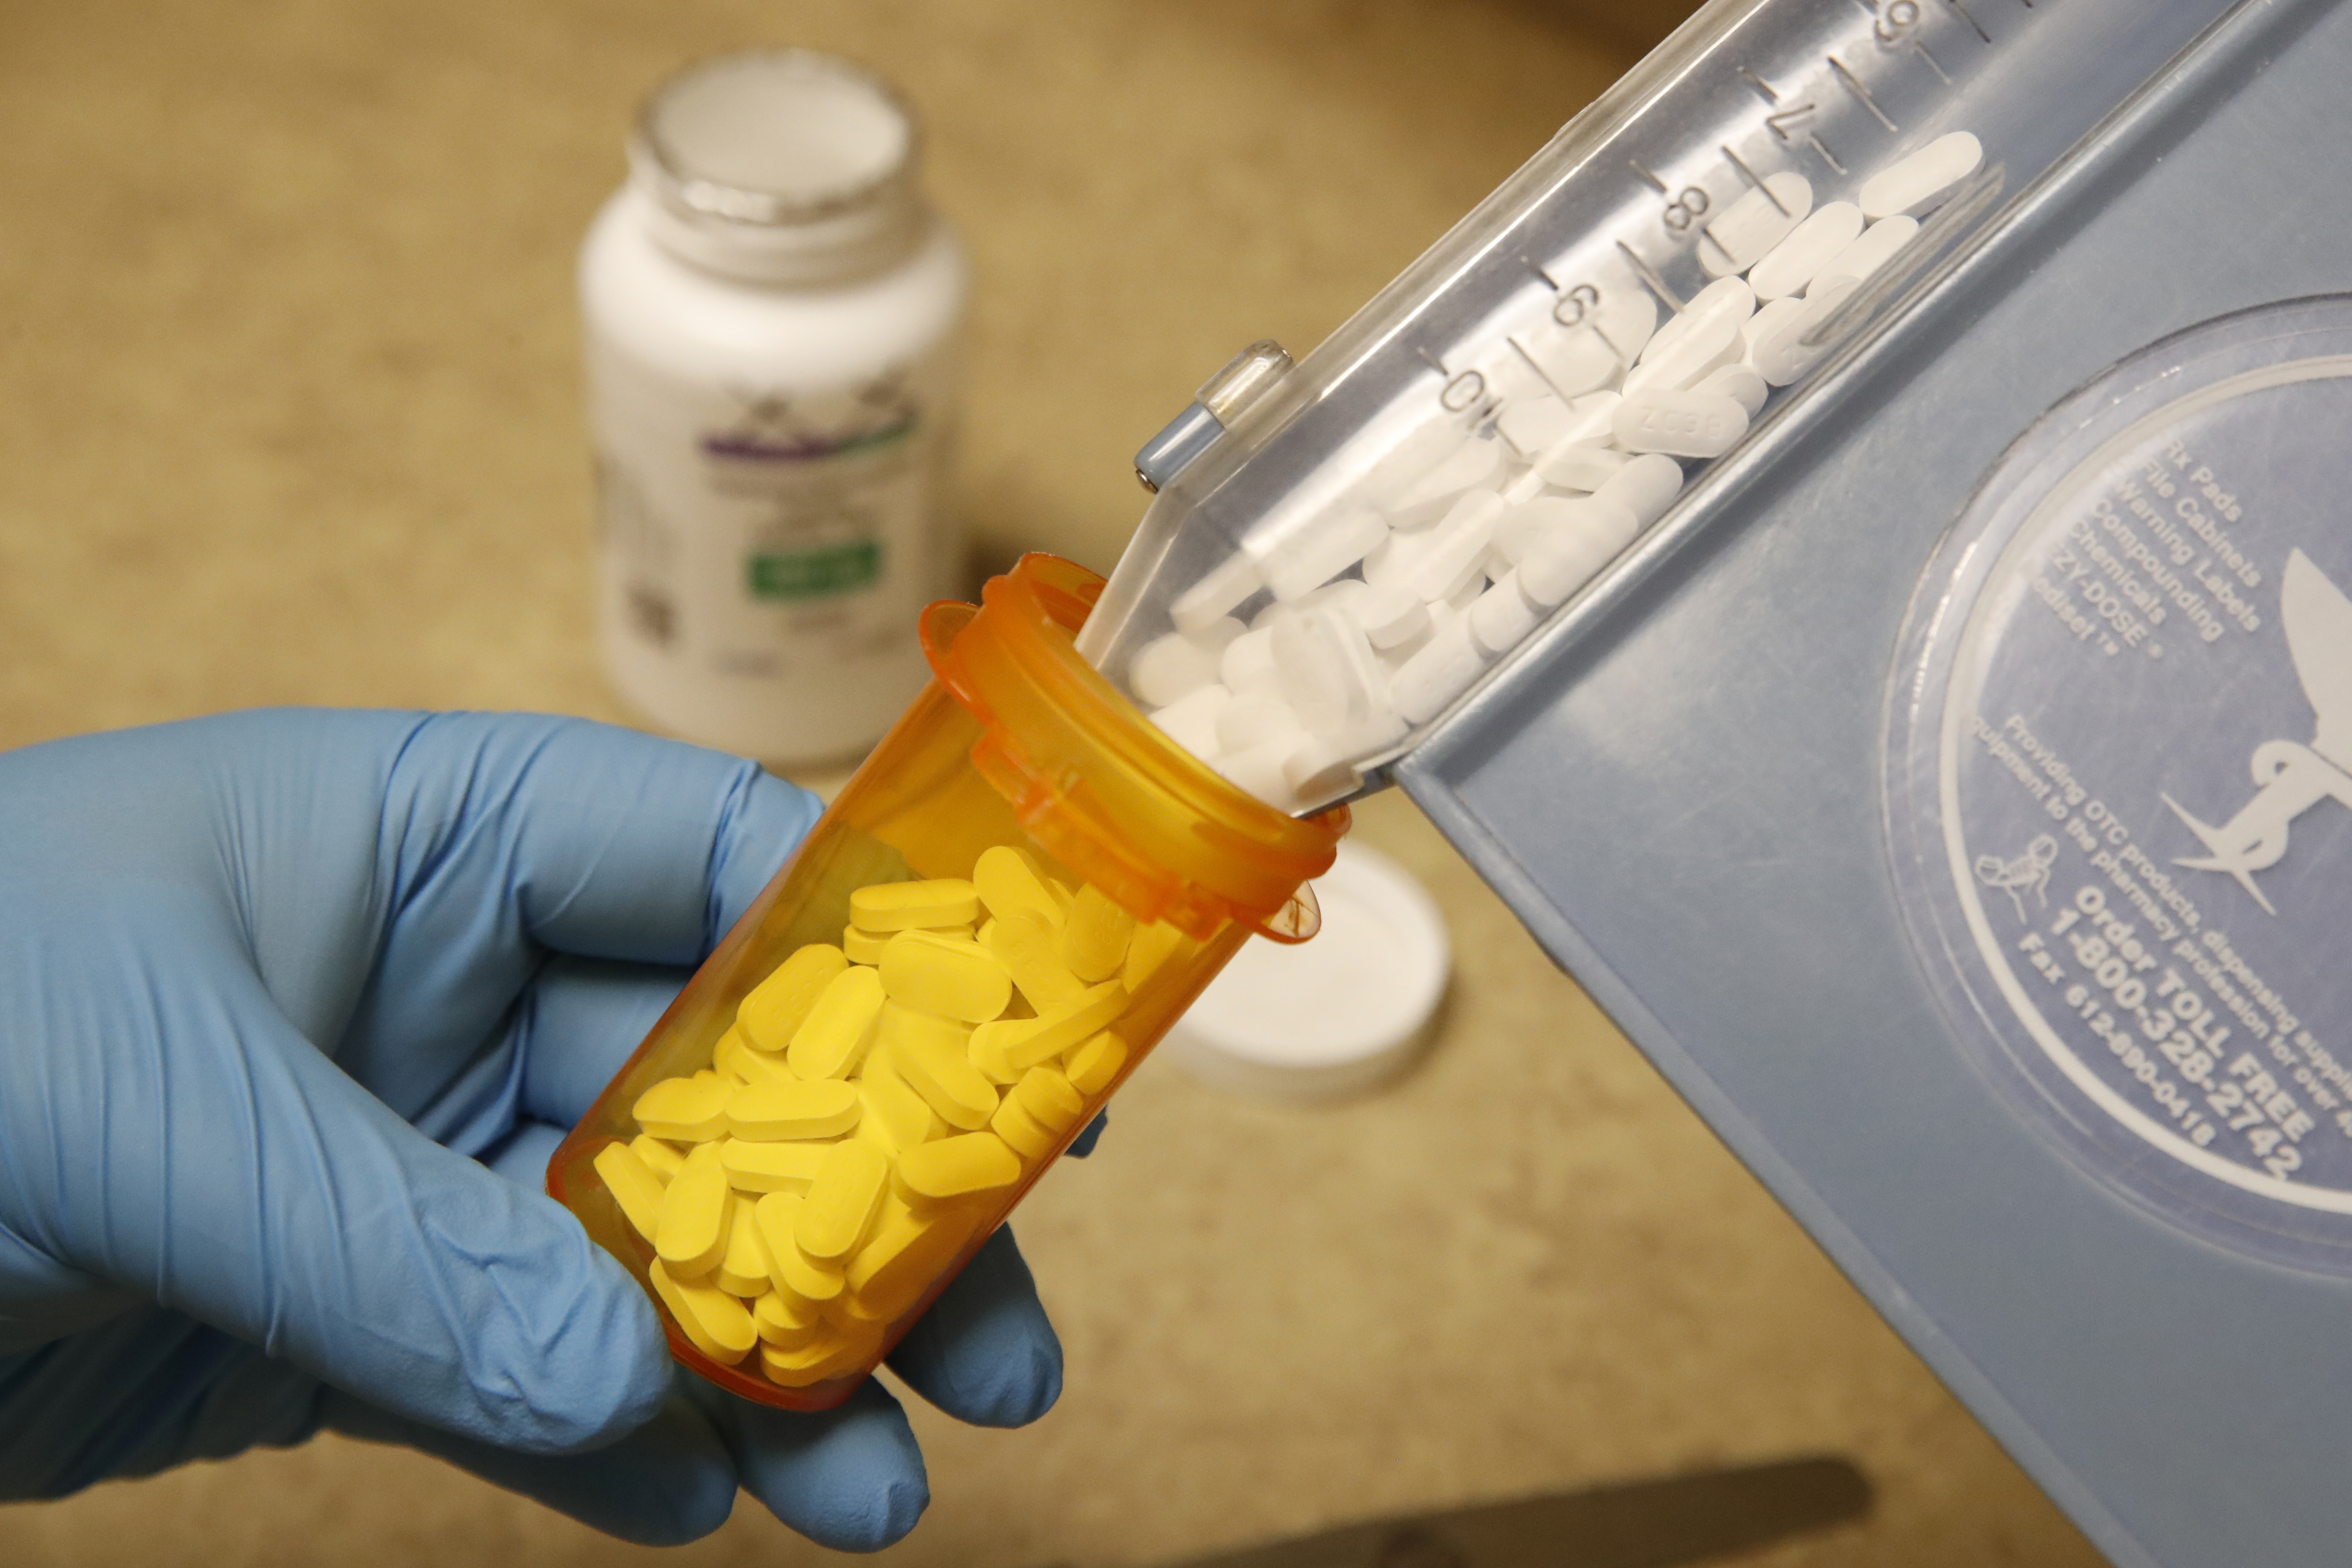 Visszahívtak két gyógyszert, miután összekeverték egy antidepresszáns és egy potenciazavart kezelő tabletta csomagolását